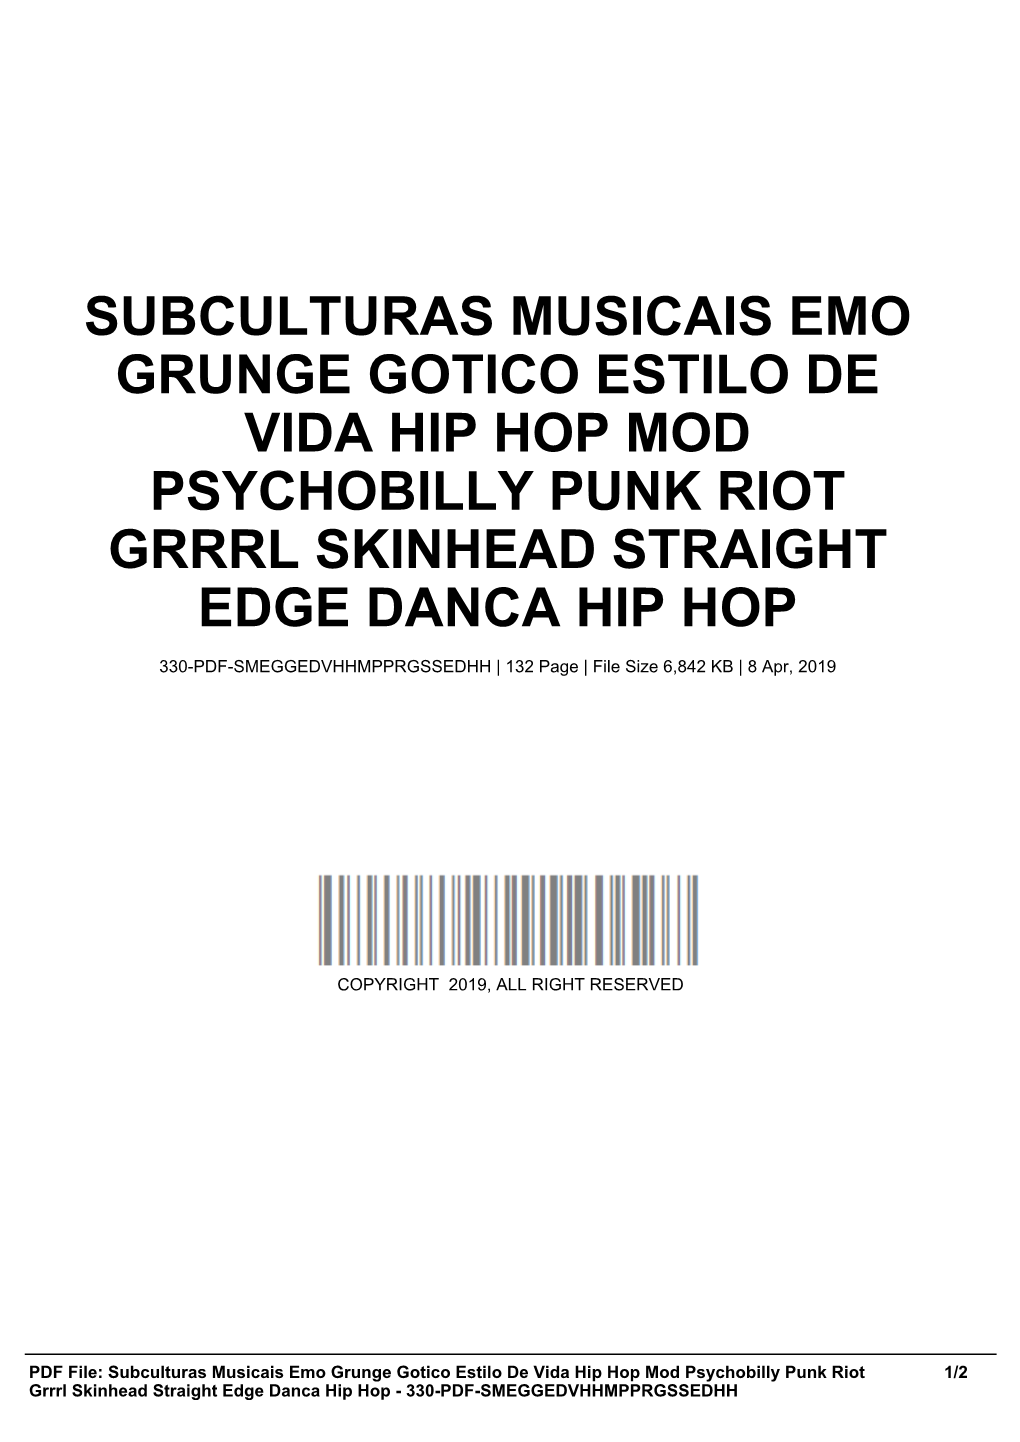 Subculturas Musicais Emo Grunge Gotico Estilo De Vida Hip Hop Mod Psychobilly Punk Riot Grrrl Skinhead Straight Edge Danca Hip Hop